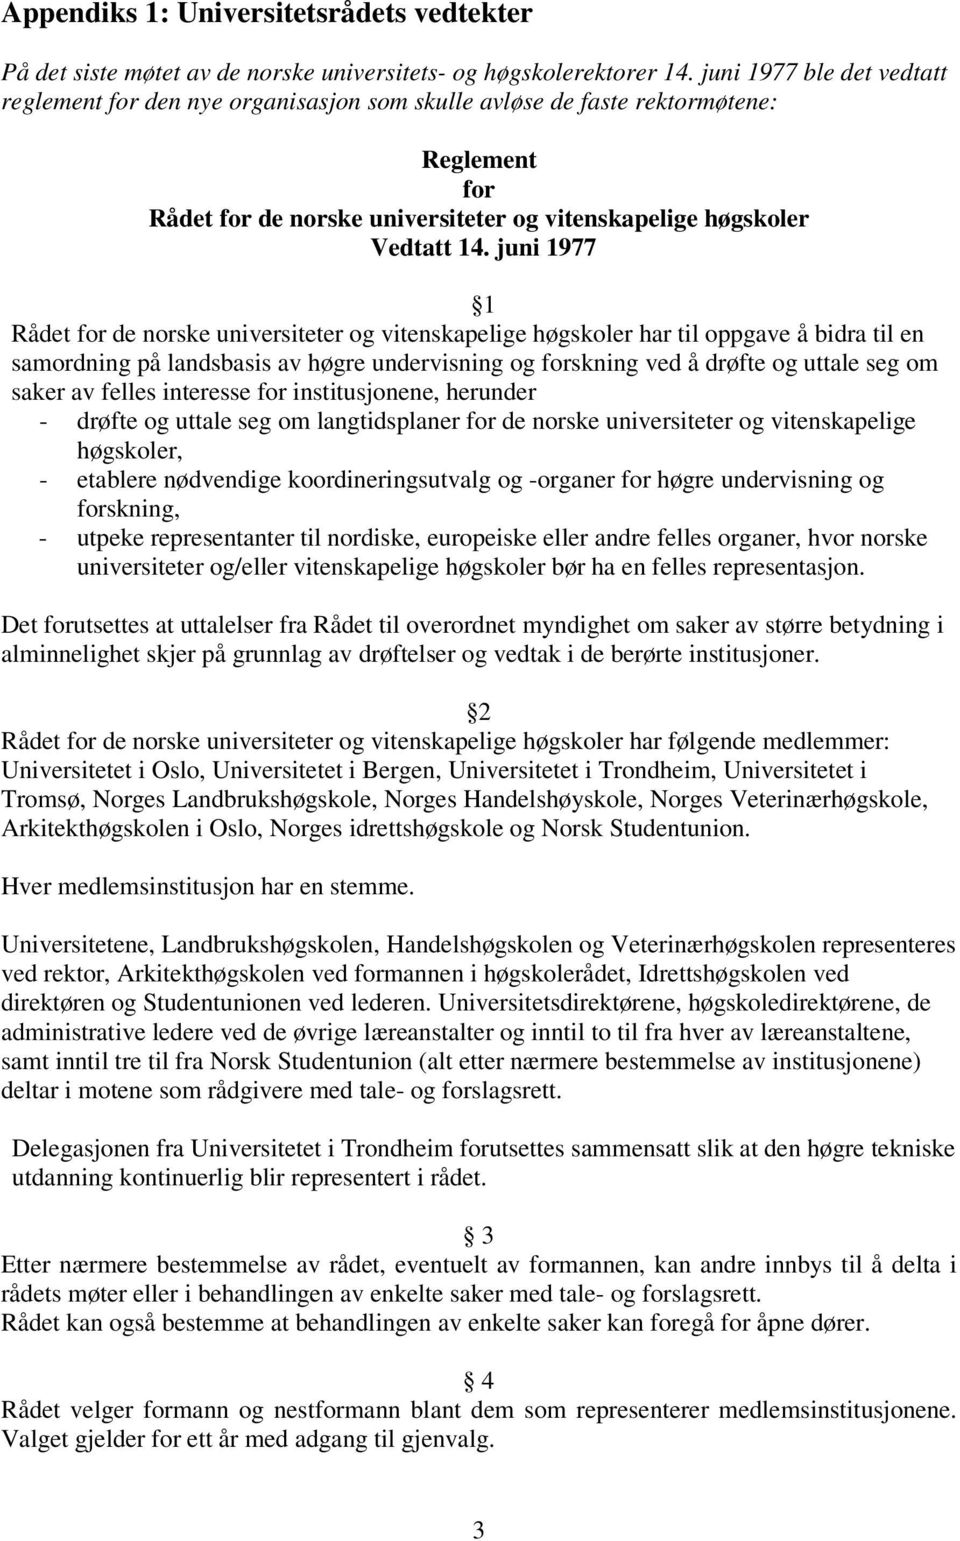 juni 1977 1 Rådet for de norske universiteter og vitenskapelige høgskoler har til oppgave å bidra til en samordning på landsbasis av høgre undervisning og forskning ved å drøfte og uttale seg om